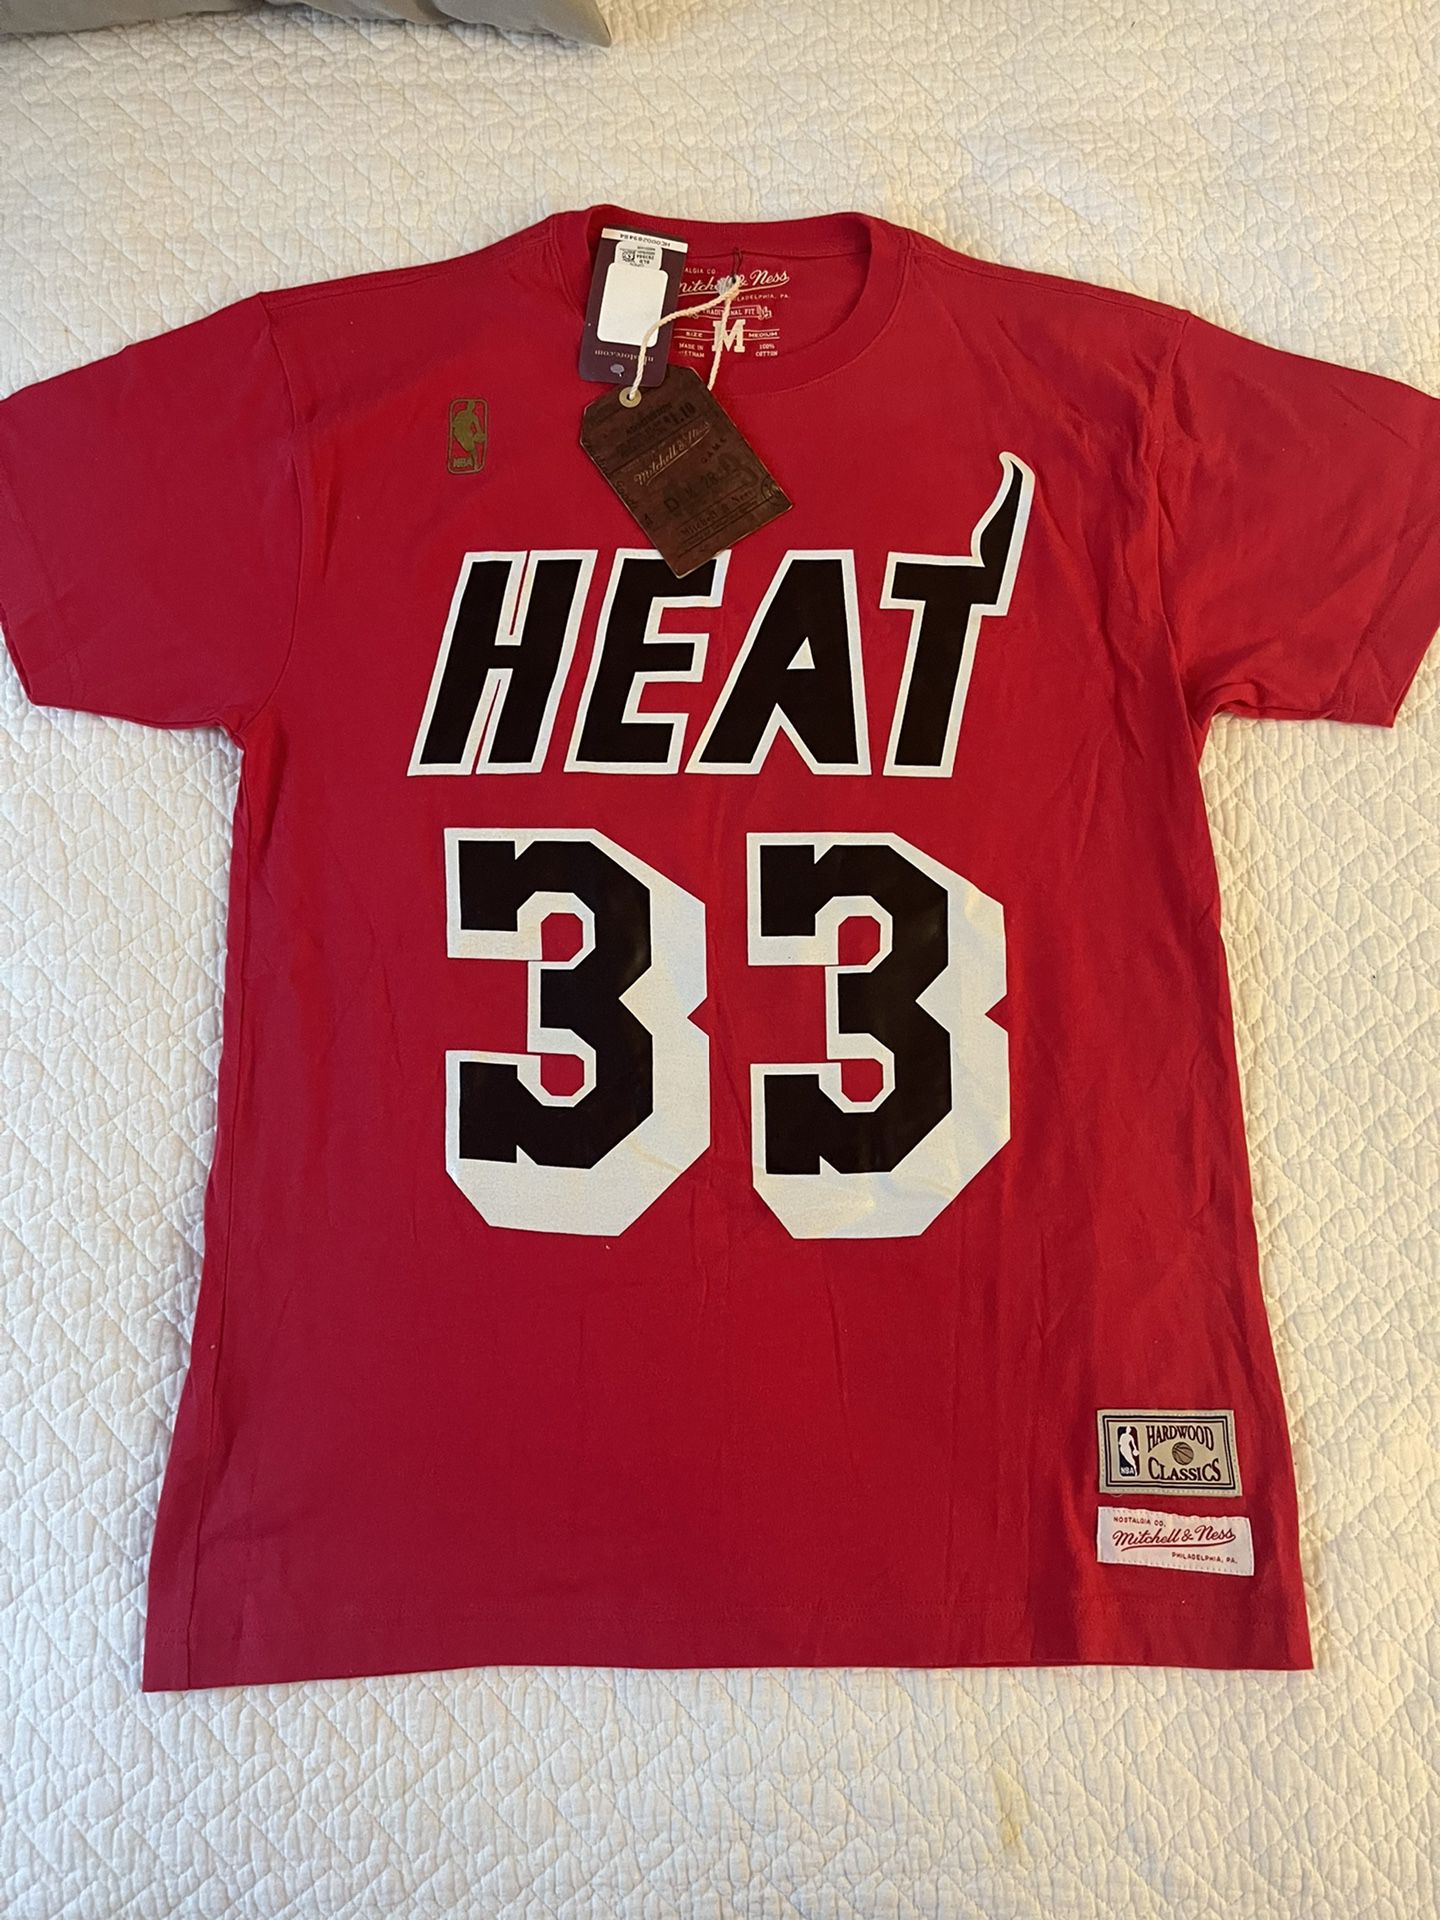 Miami Heat- Alonzo Mourning Jersey Shirt 